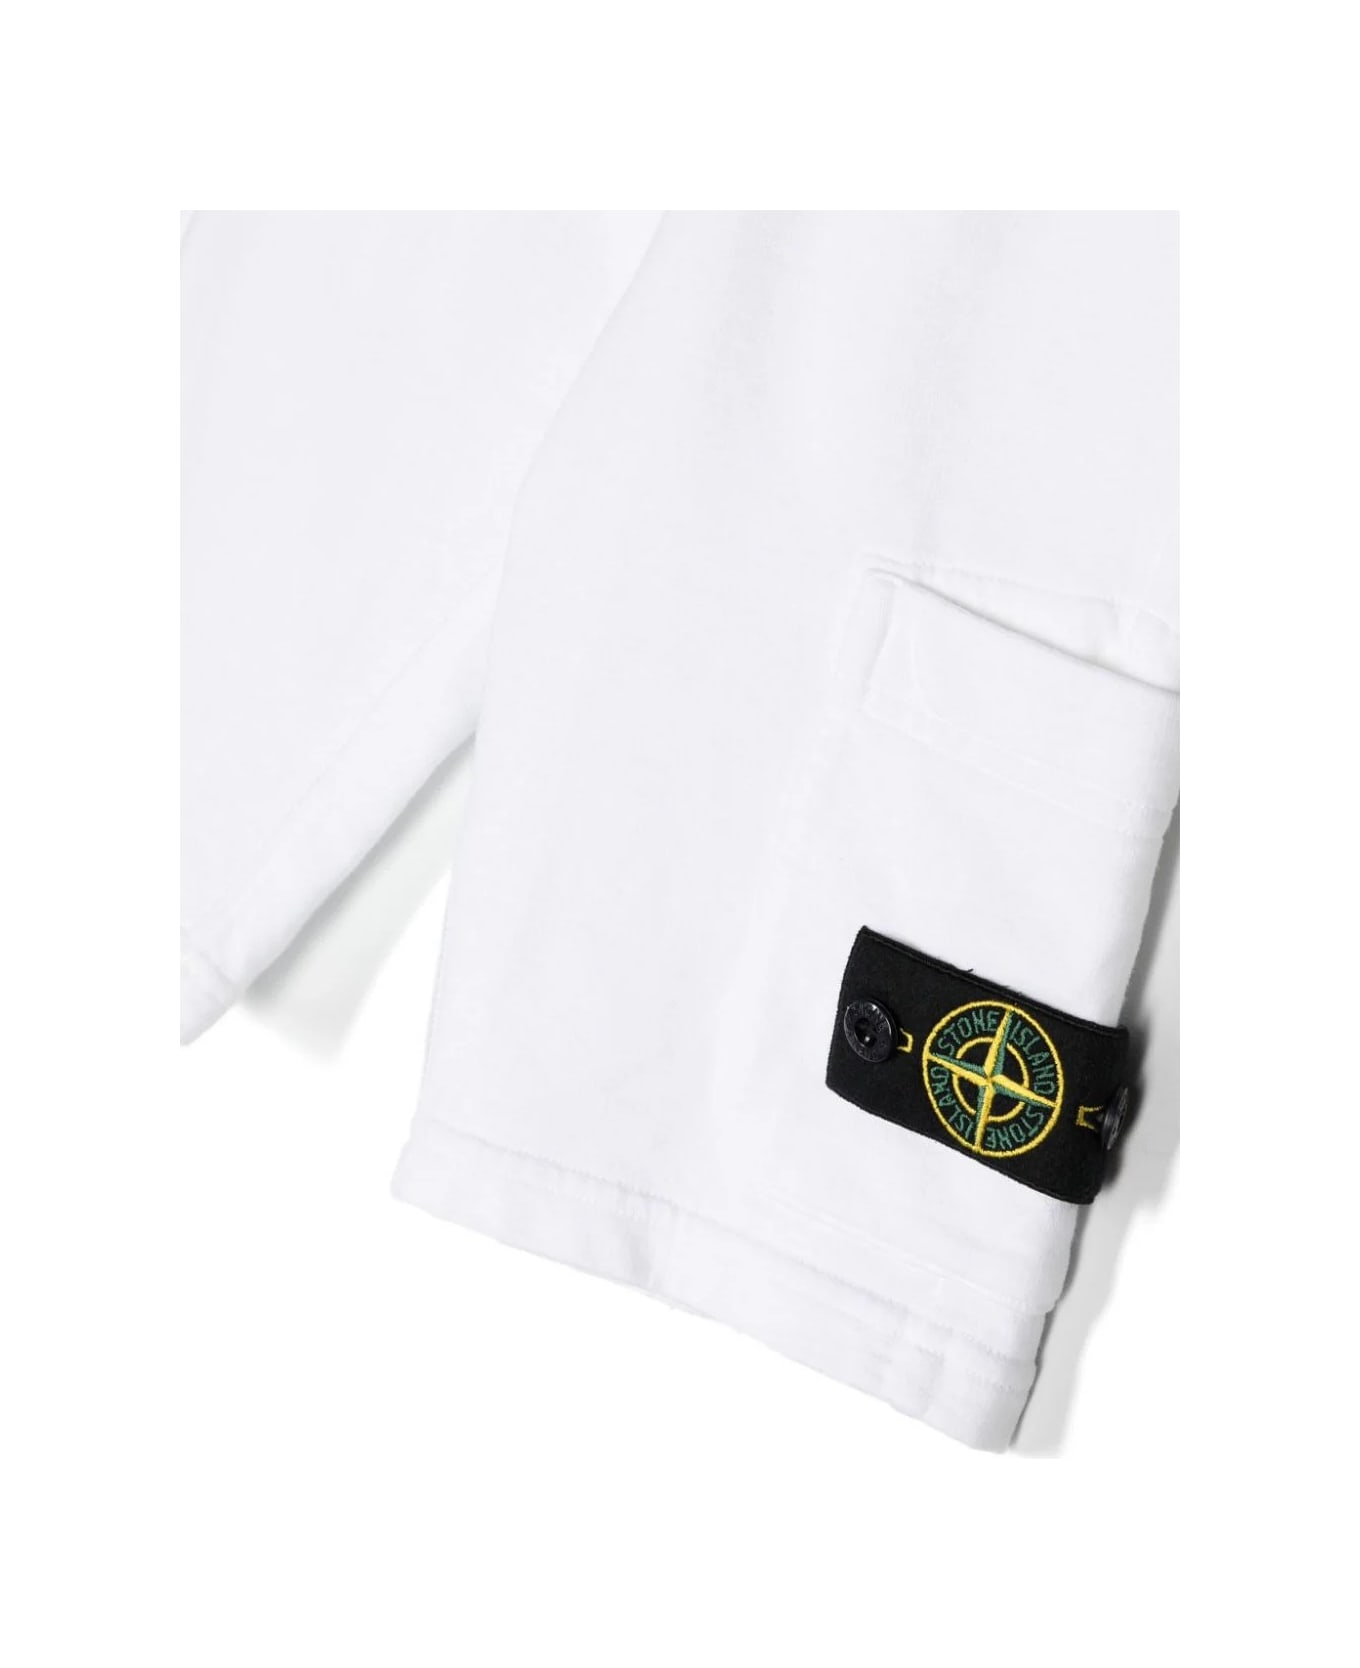 Stone Island White Sports Shorts With Logo - Bianco ボトムス